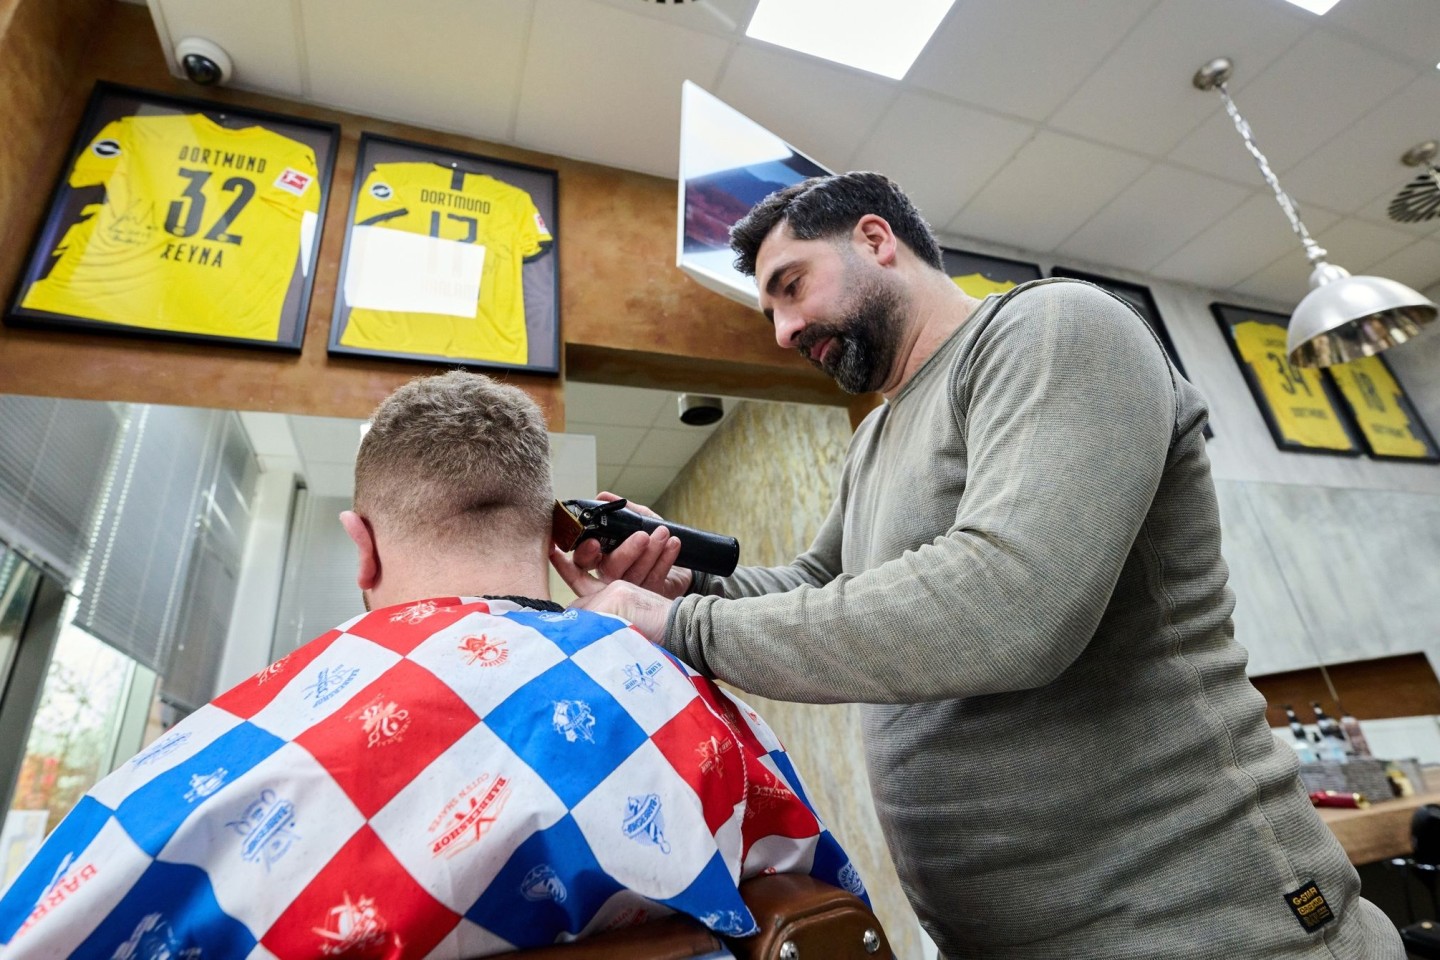 Friseur Taner Dogan schneidet in seinem Salon in einer Netto-Filiale einem Kunden die Haare.